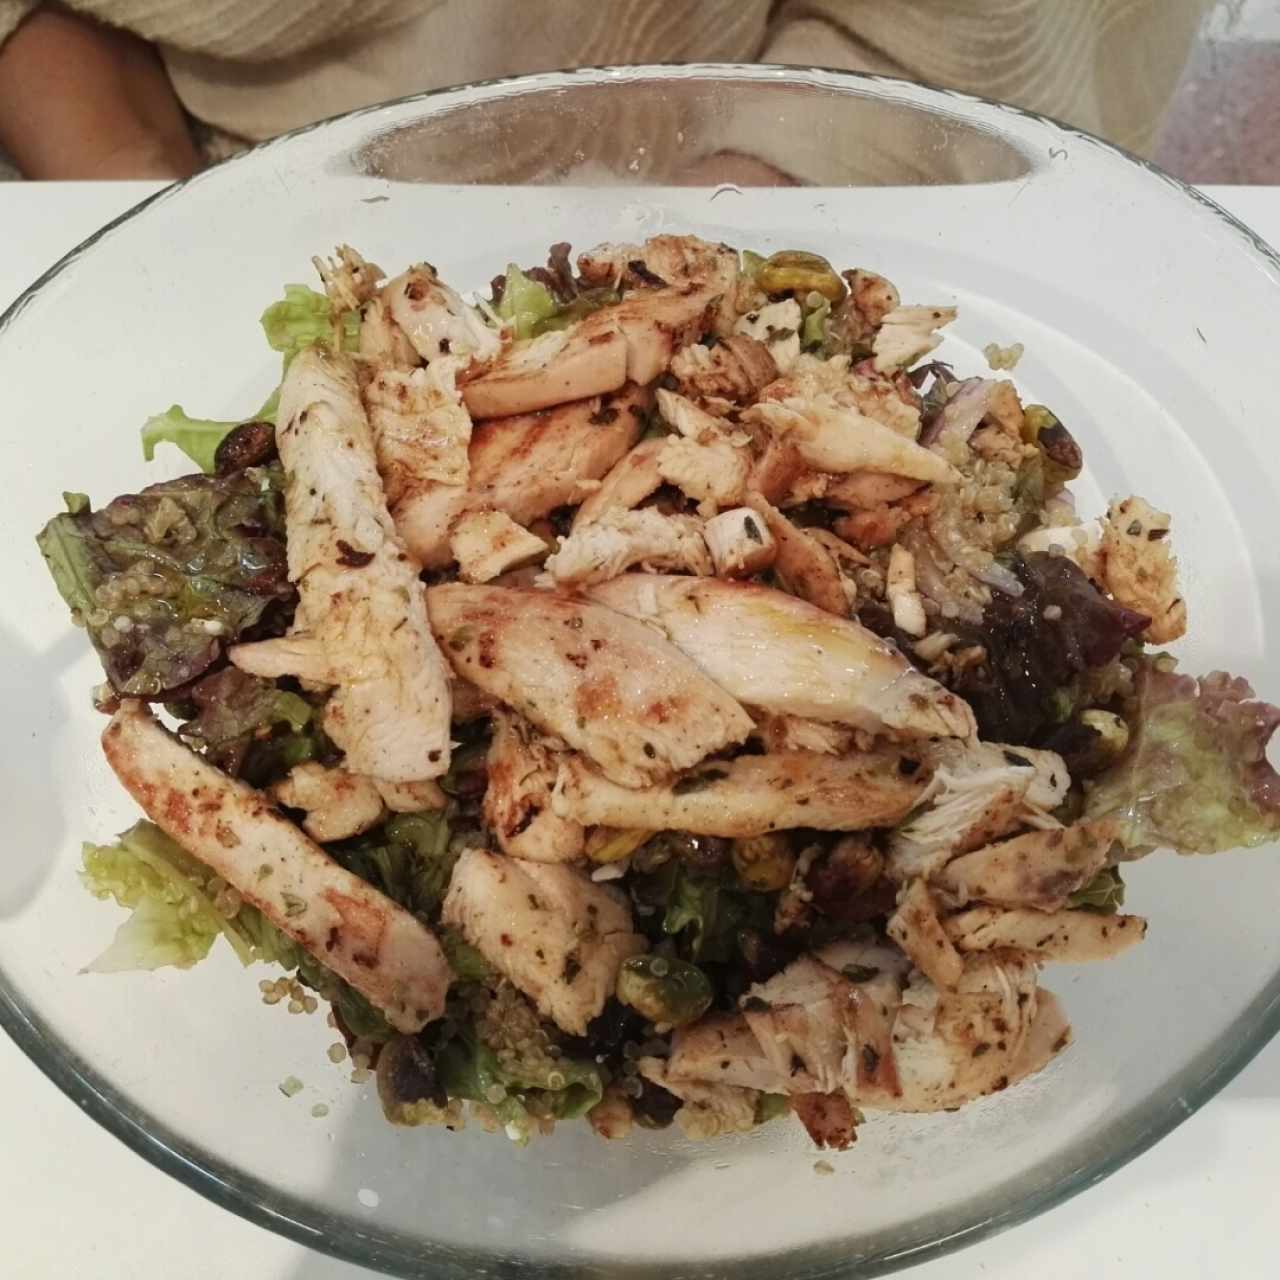 Ensalada de quinoa con pollo